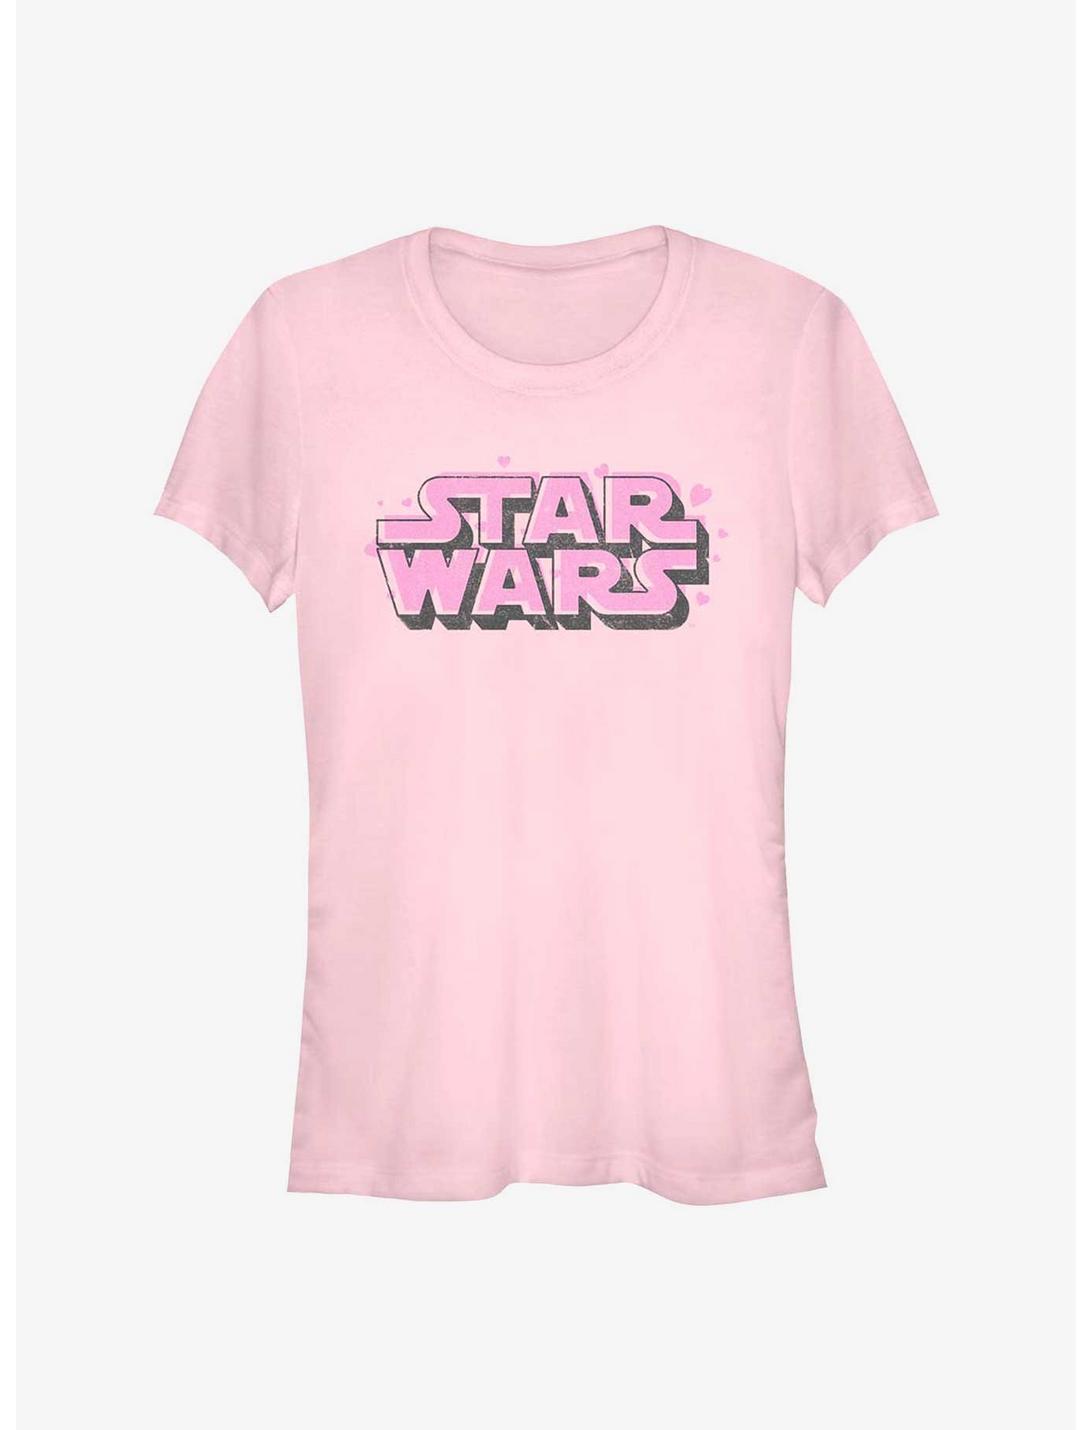 Star Wars Floating Hearts Logo Girls T-Shirt, LIGHT PINK, hi-res